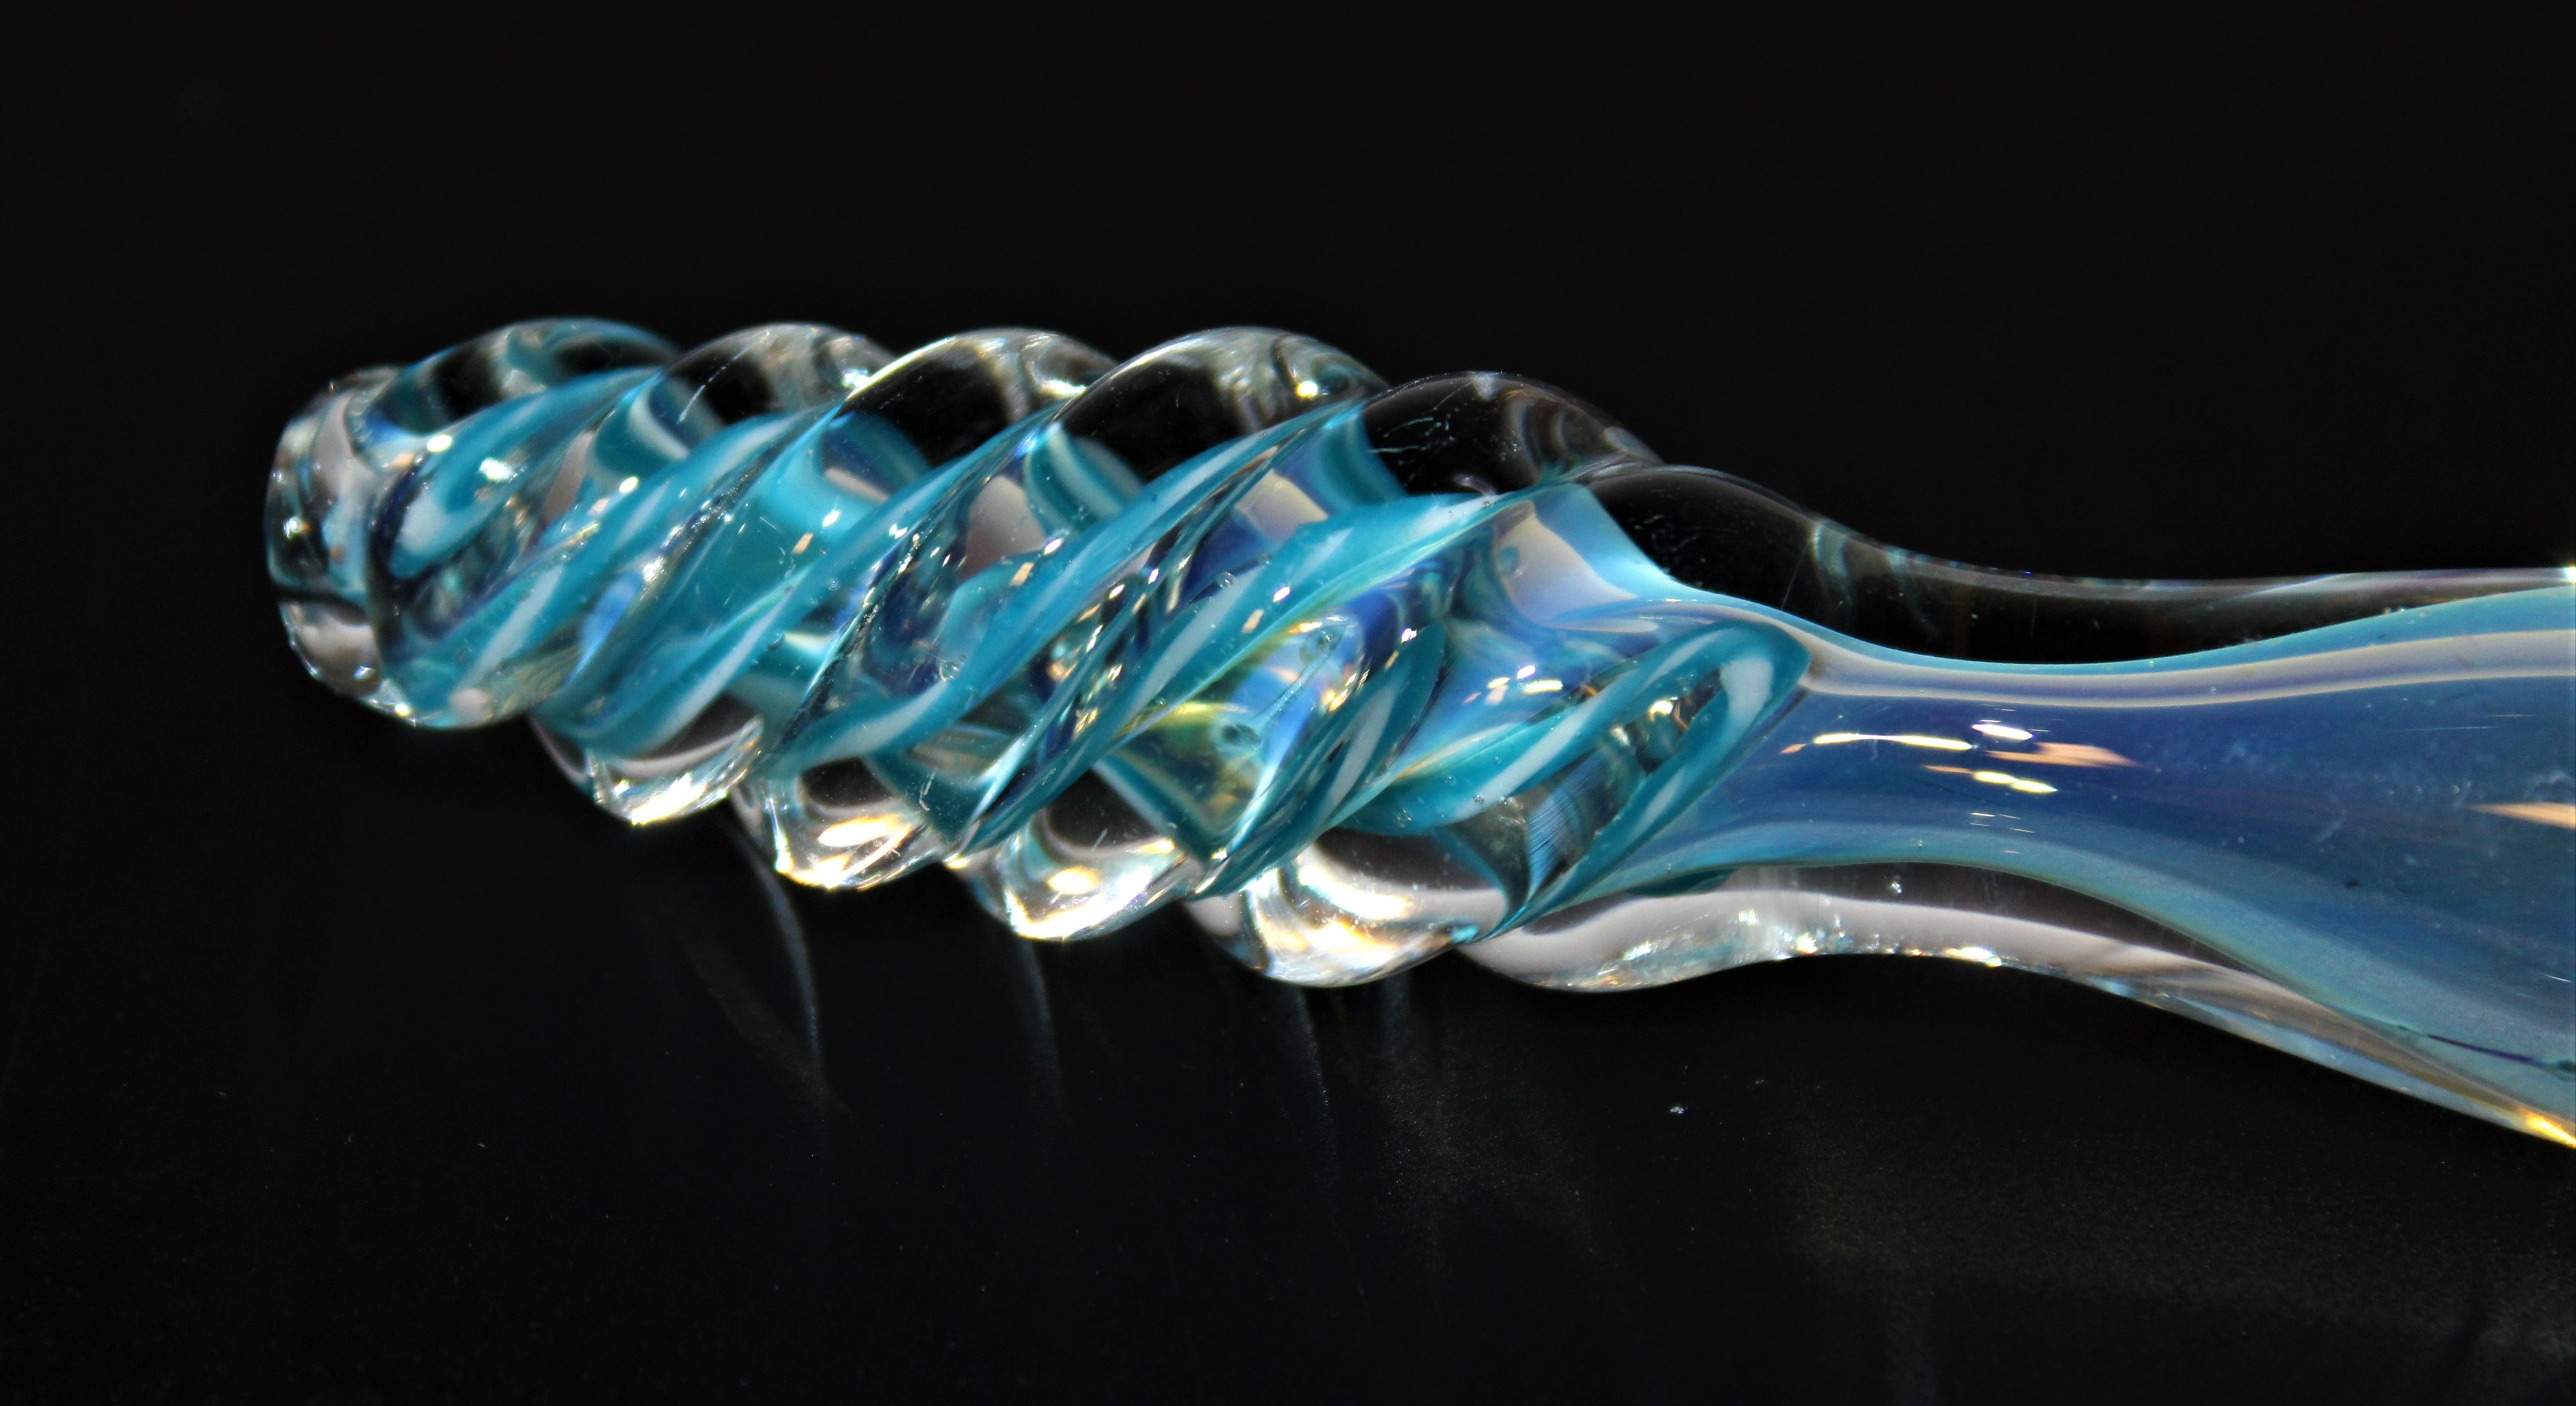 TWISTER BLUE 3 1/2" Chameleon Glass One Hitter Chillum